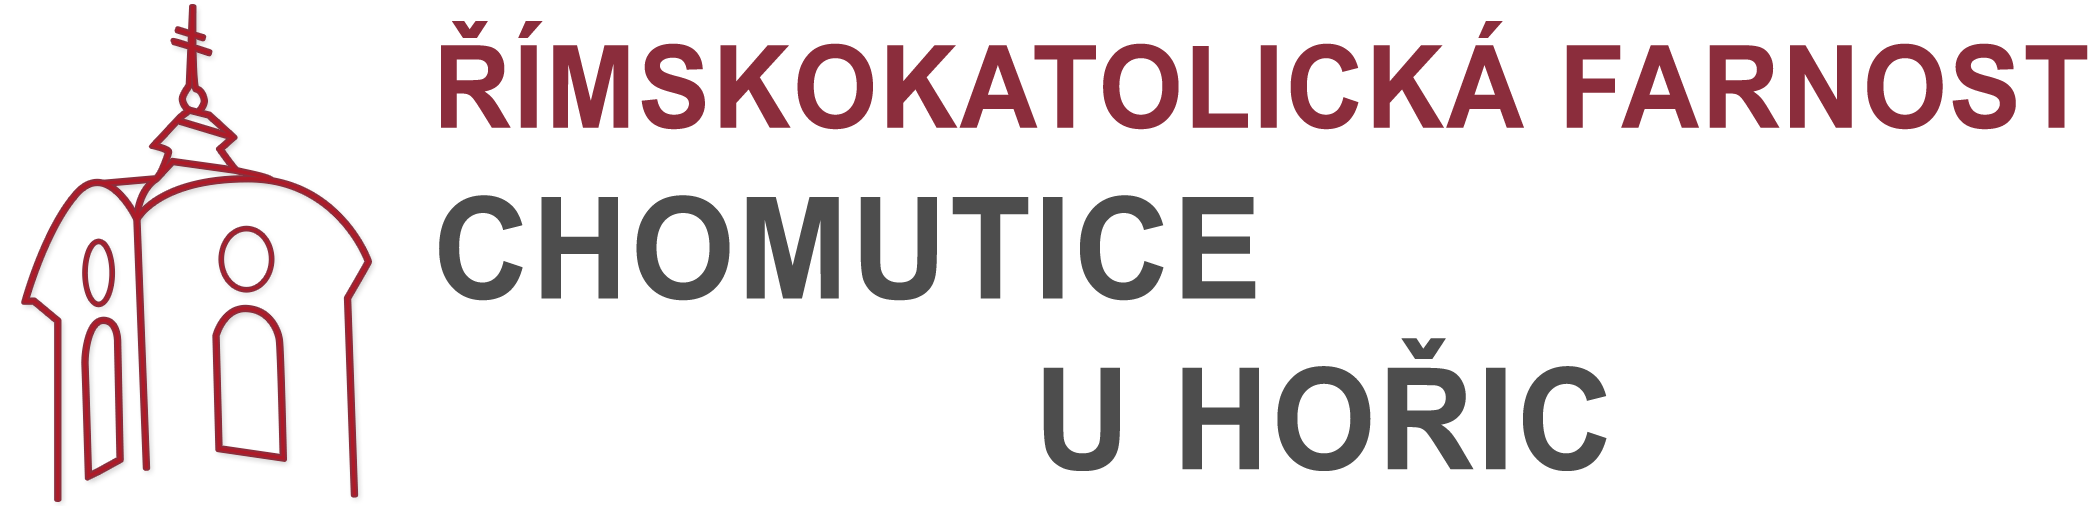 Logo kontakt - Římskokatolická farnost Chomutice u Hořic